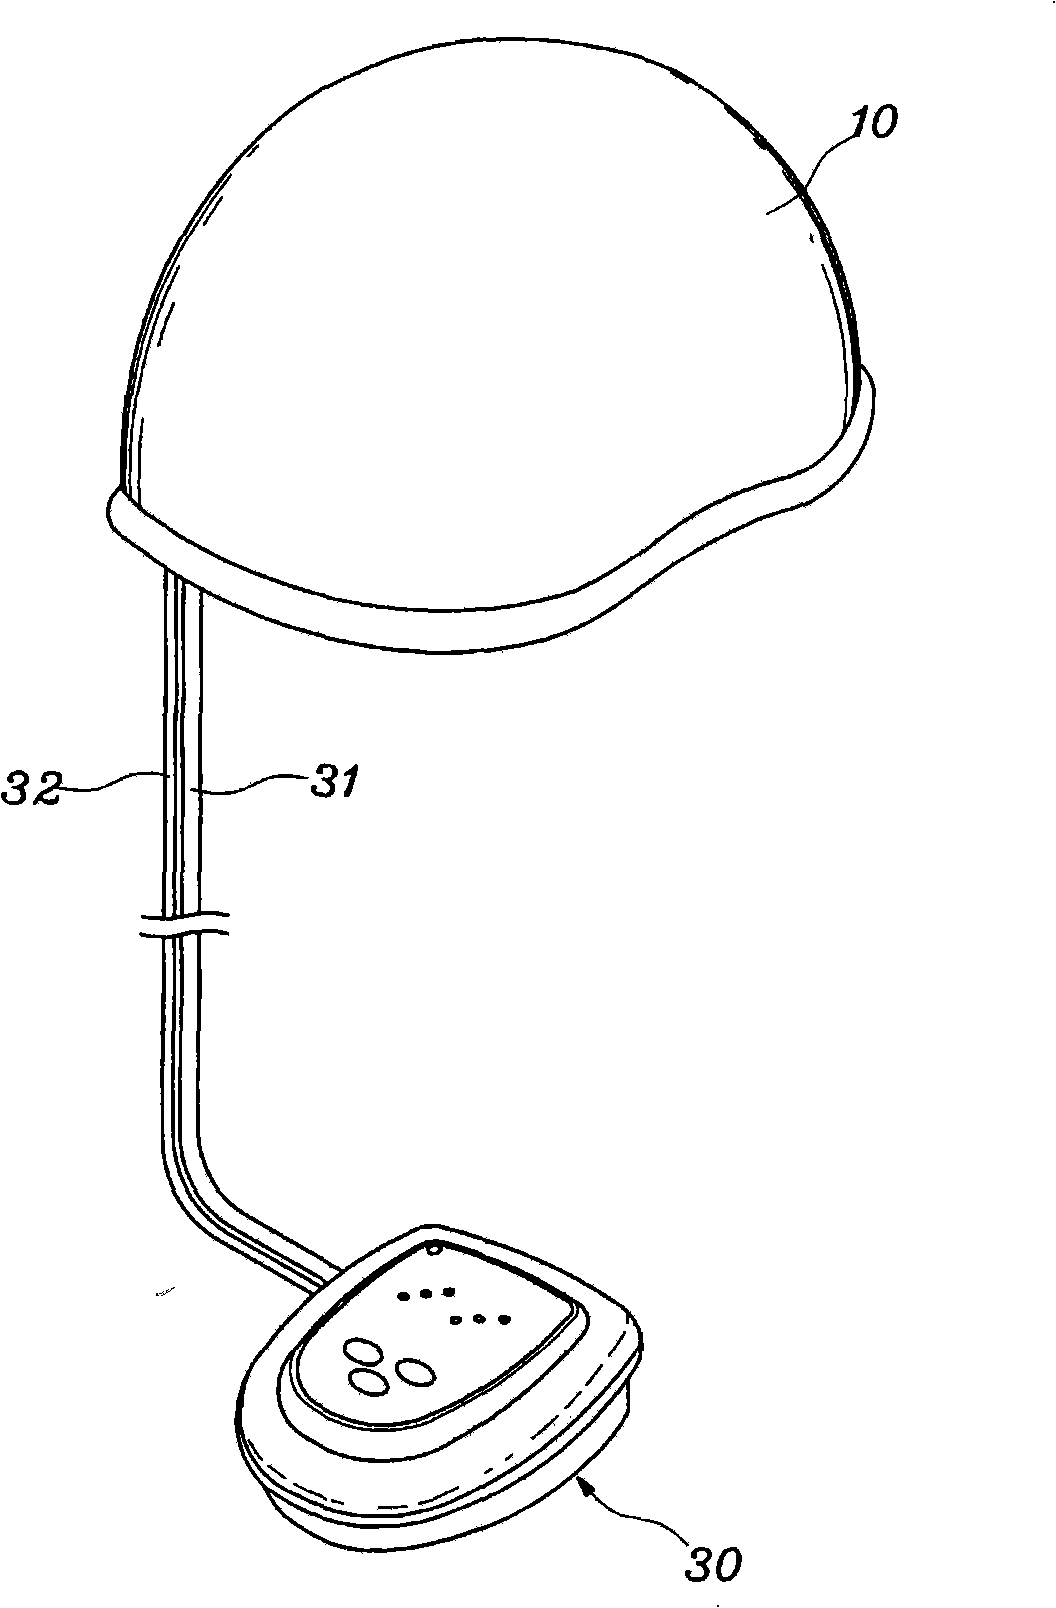 Apparatus for head acupressure using air pressure